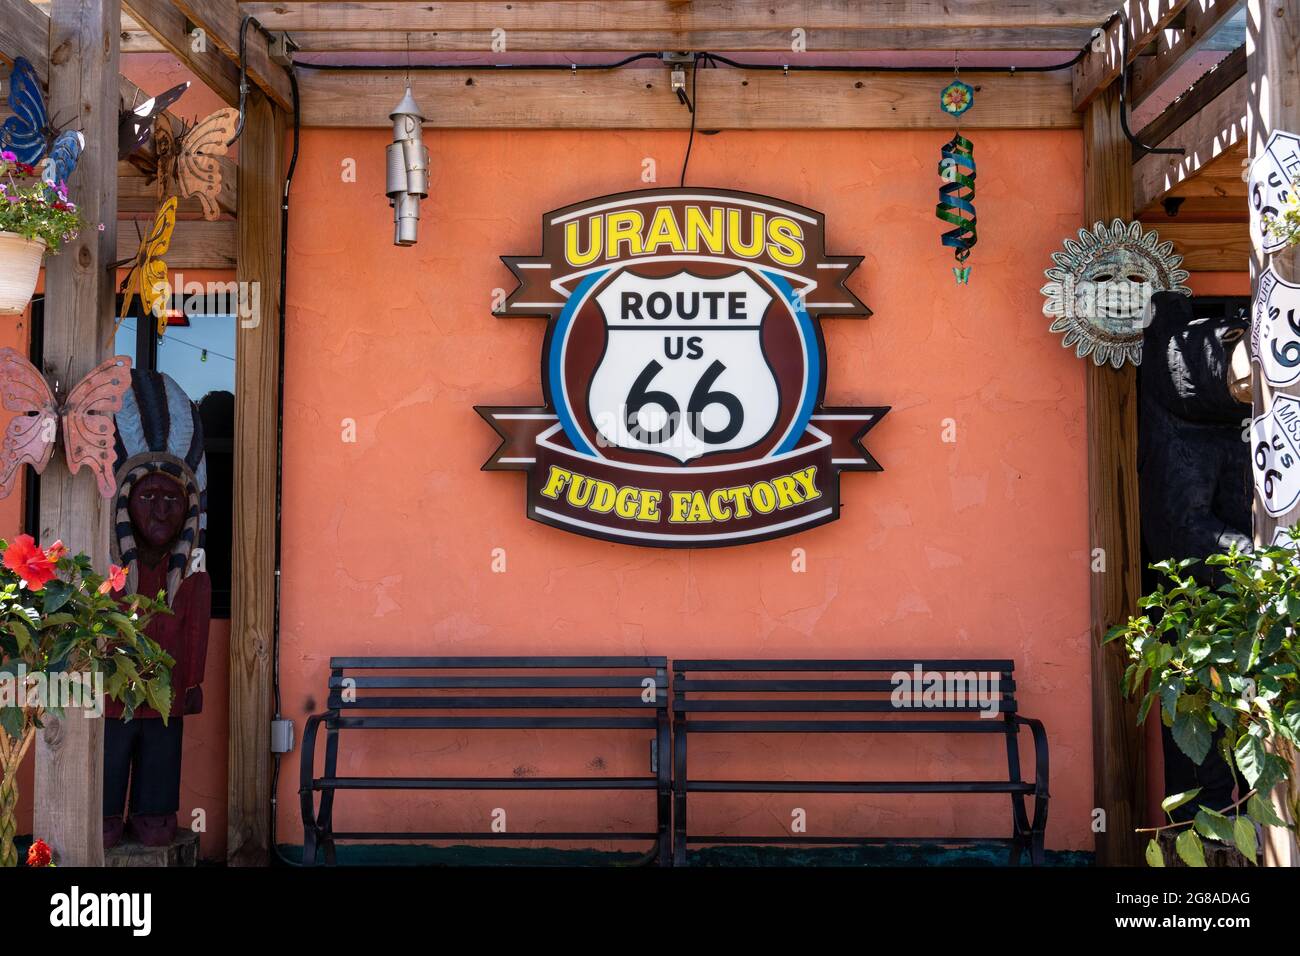 St Robert, MO - 13. Juni 2021: Die Uranus Fudge Factory ist ein beliebter Touristenstopp entlang der Route 44 und der historischen Route 66, auch bekannt als State Highway z. Stockfoto